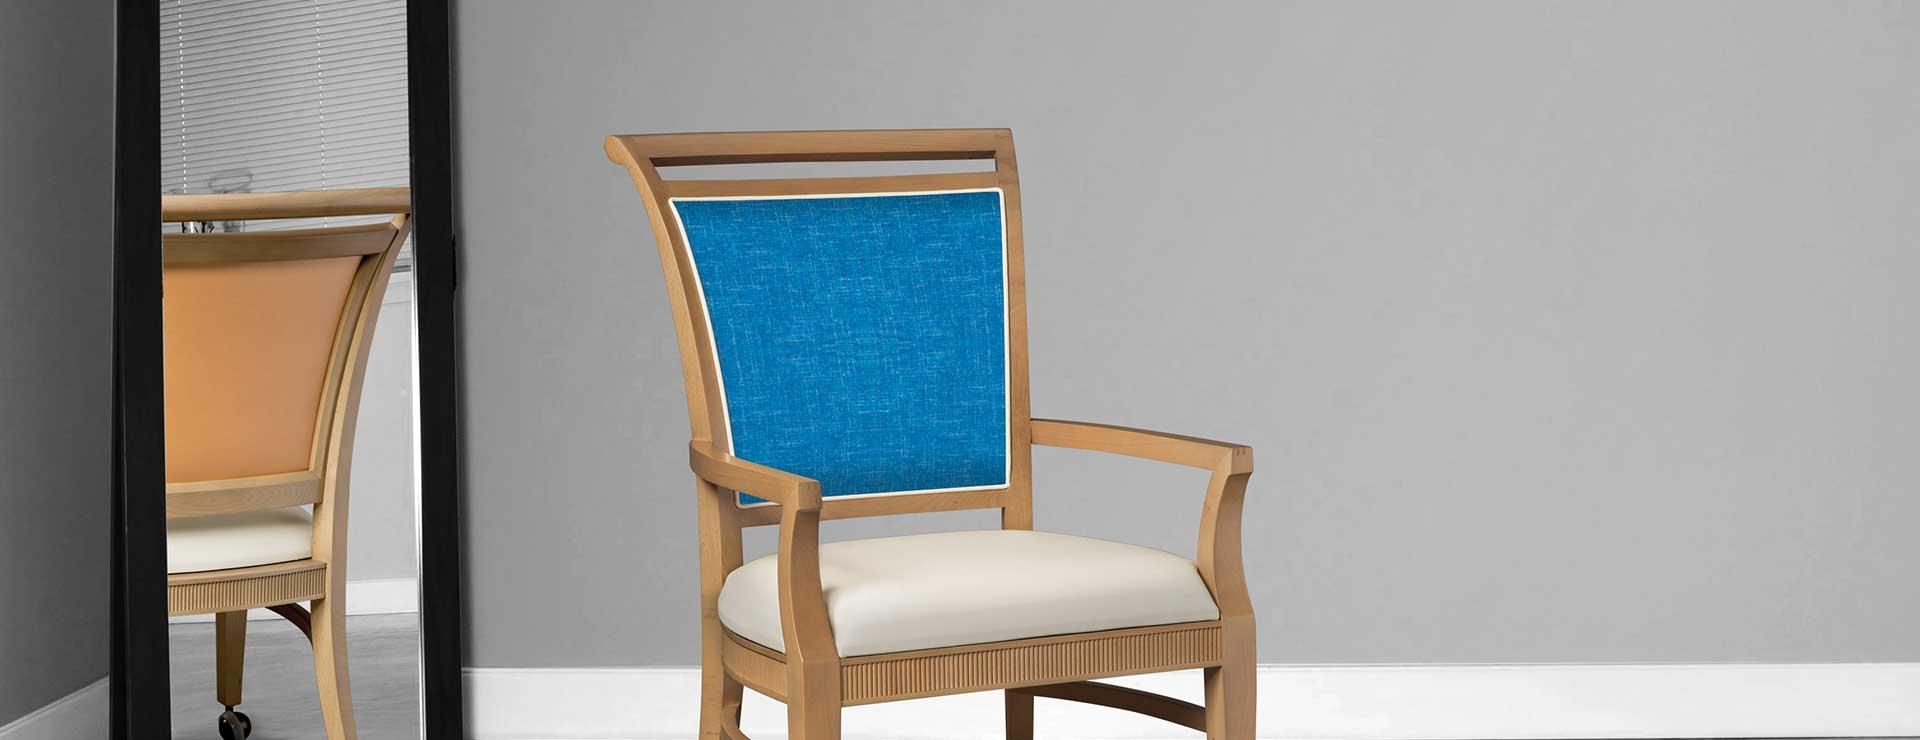 hekman-furniture-chair.jpg